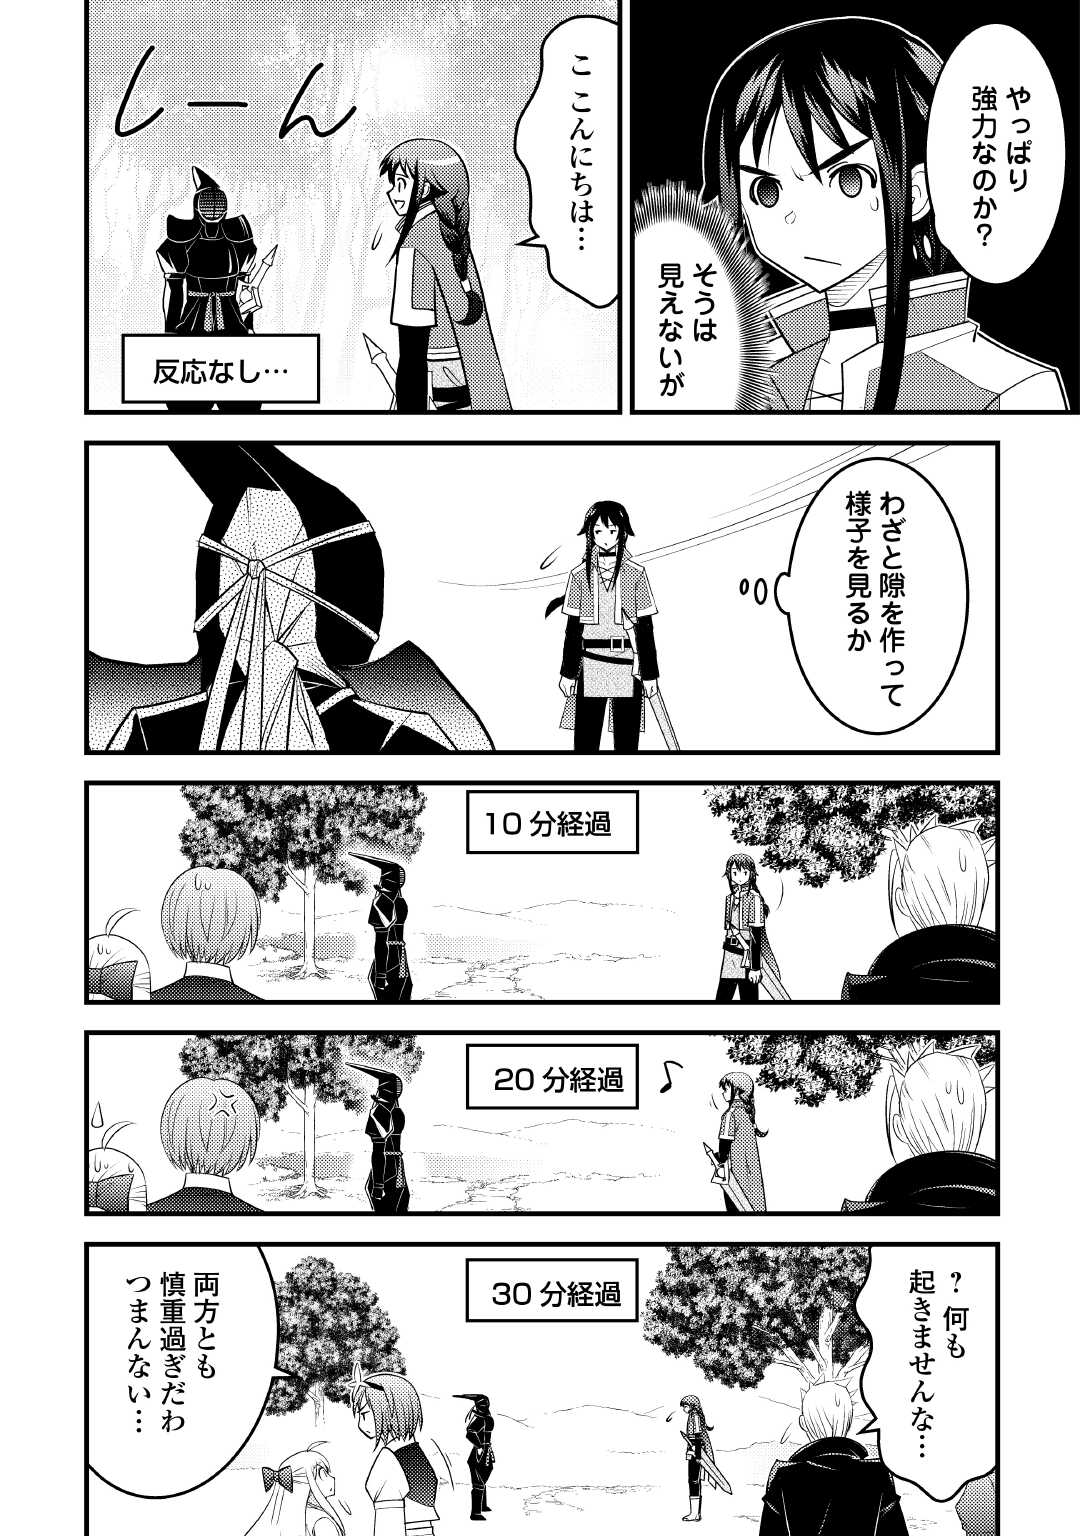 Makyou Sodachi no Zennou Boukensha wa Isekai de Suki Katte Ikiru!! – Oi Dashita Kuse ni Modotte Koidato? Sonna no Shiruka!! - Chapter 12 - Page 10